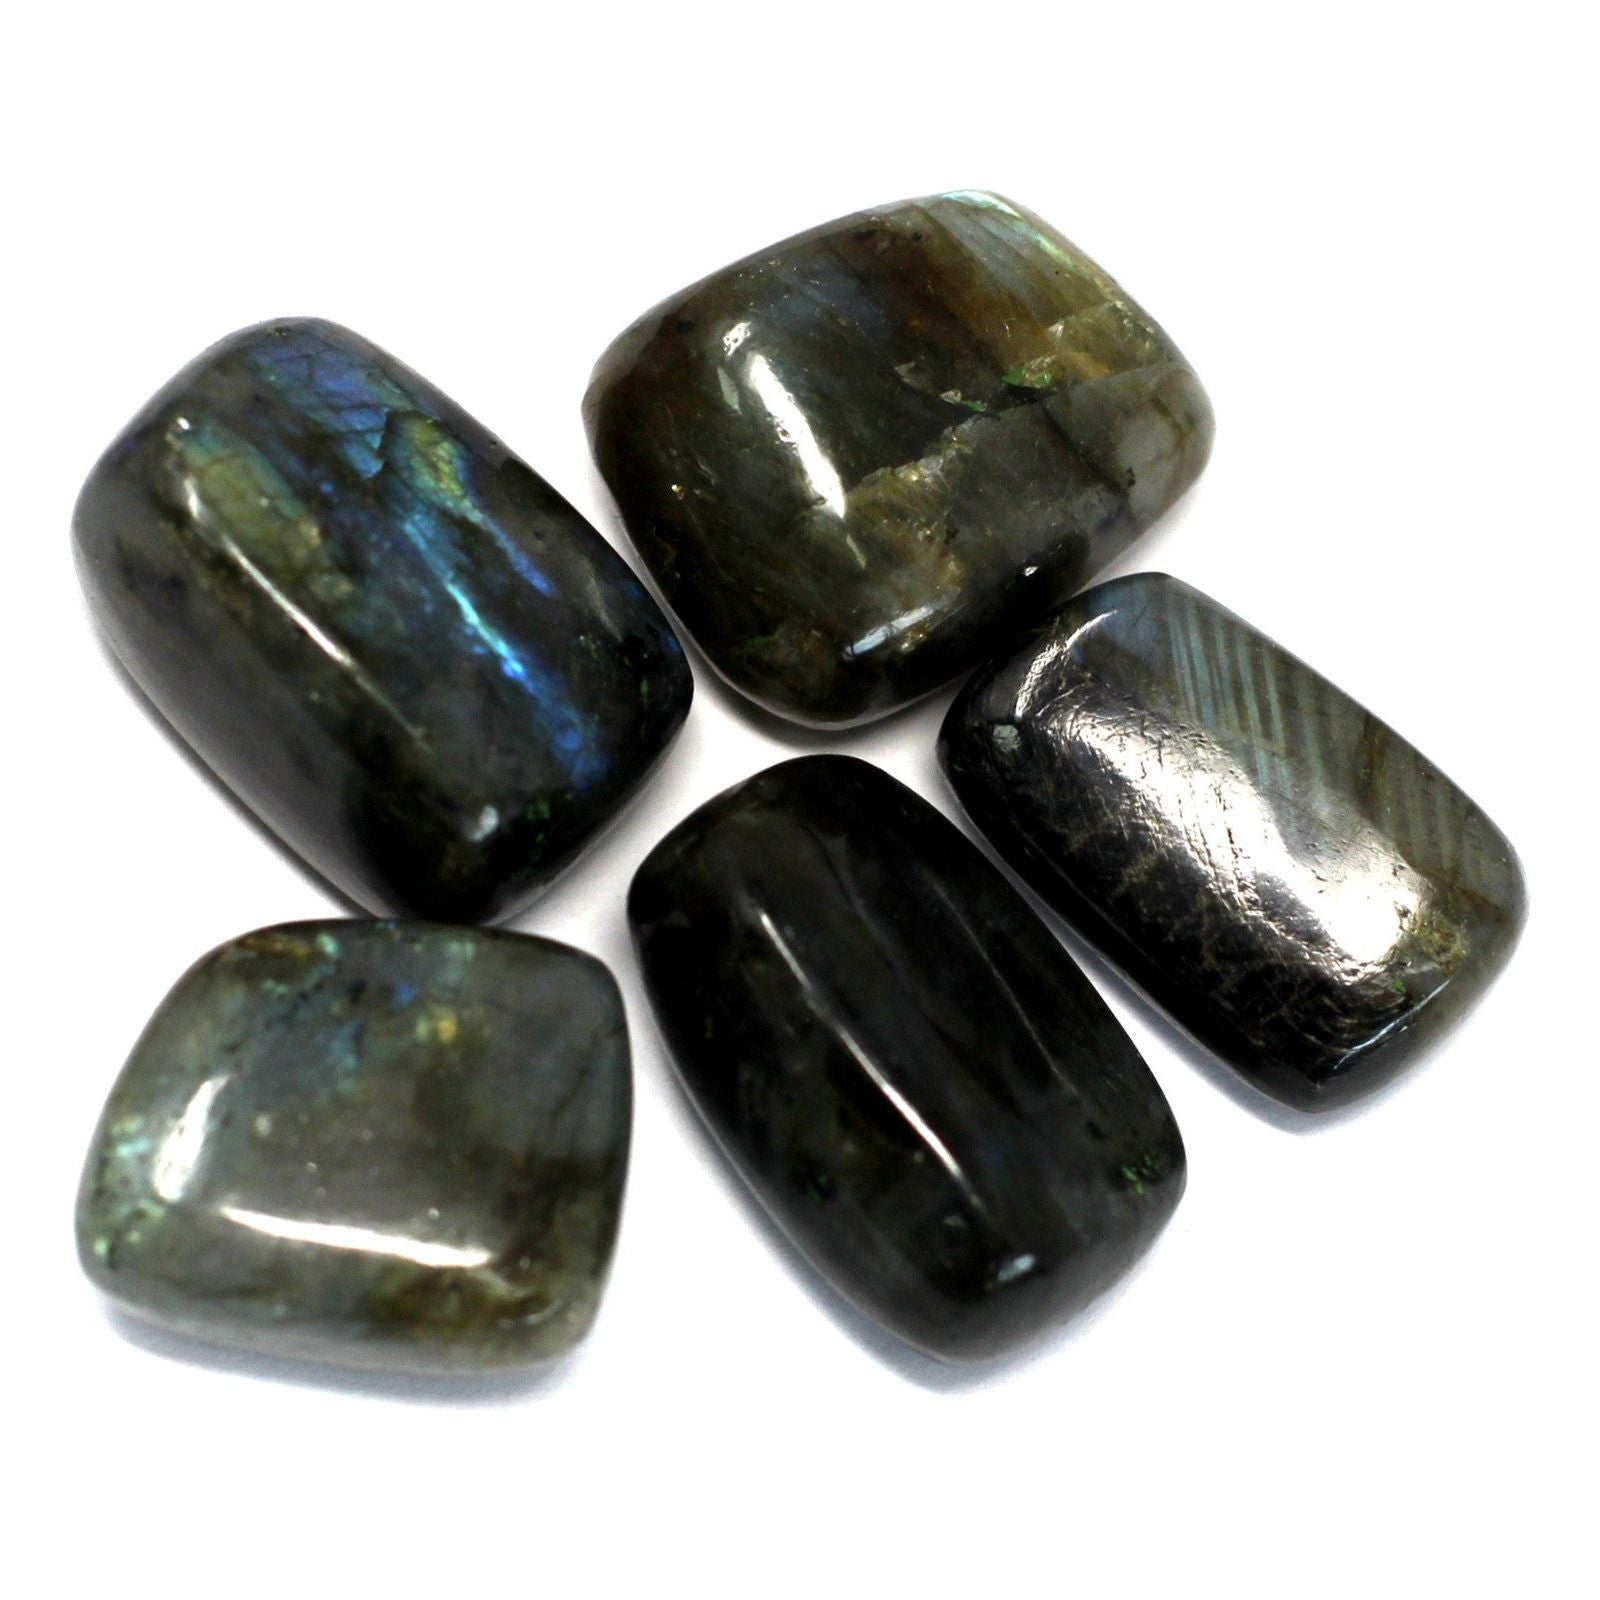 4 x Premium Tumble Stone - Labradorite - Ashton and Finch